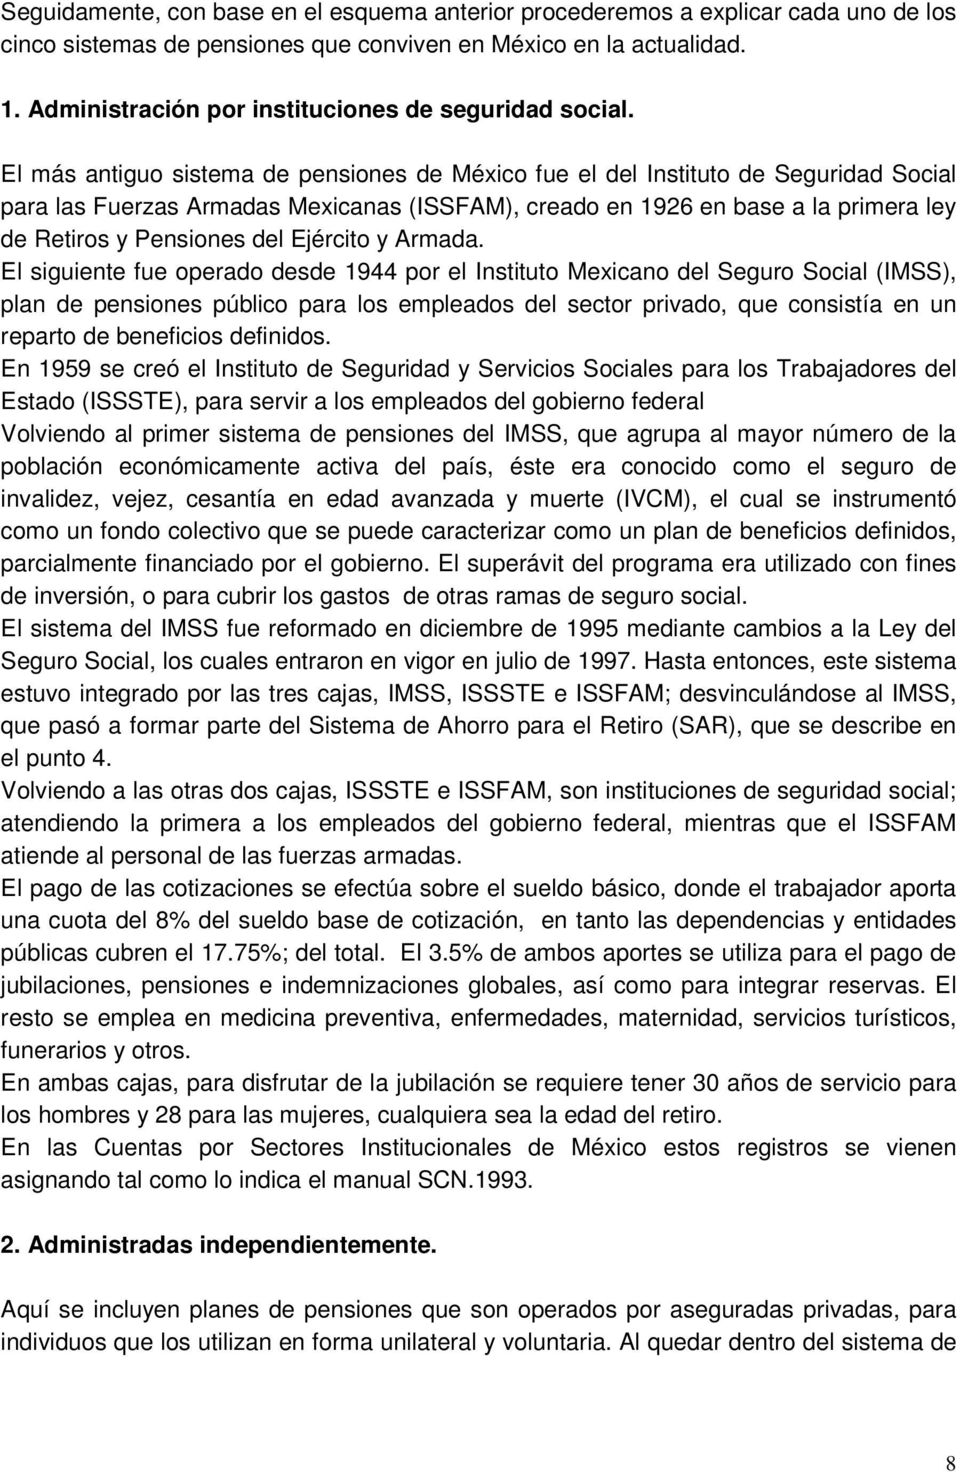 El más antiguo sistema de pensiones de México fue el del Instituto de Seguridad Social para las Fuerzas Armadas Mexicanas (ISSFAM), creado en 1926 en base a la primera ley de Retiros y Pensiones del